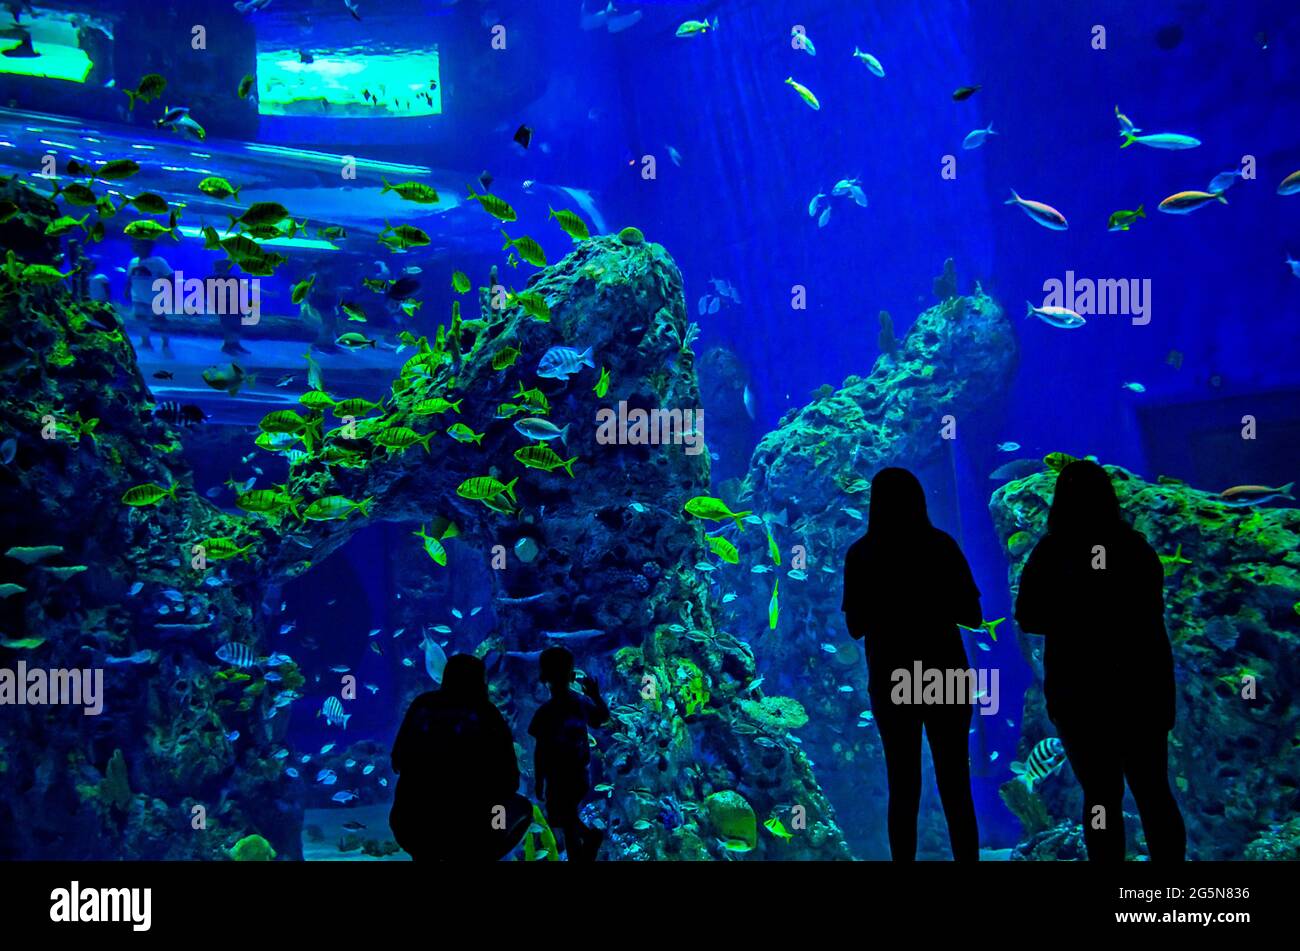 Ein großes, vom Boden bis zur Decke reichendes Aquarium mit Atlantischen Seepochen bietet Besuchern ein immersives Erlebnis im Mississippi Aquarium. Stockfoto